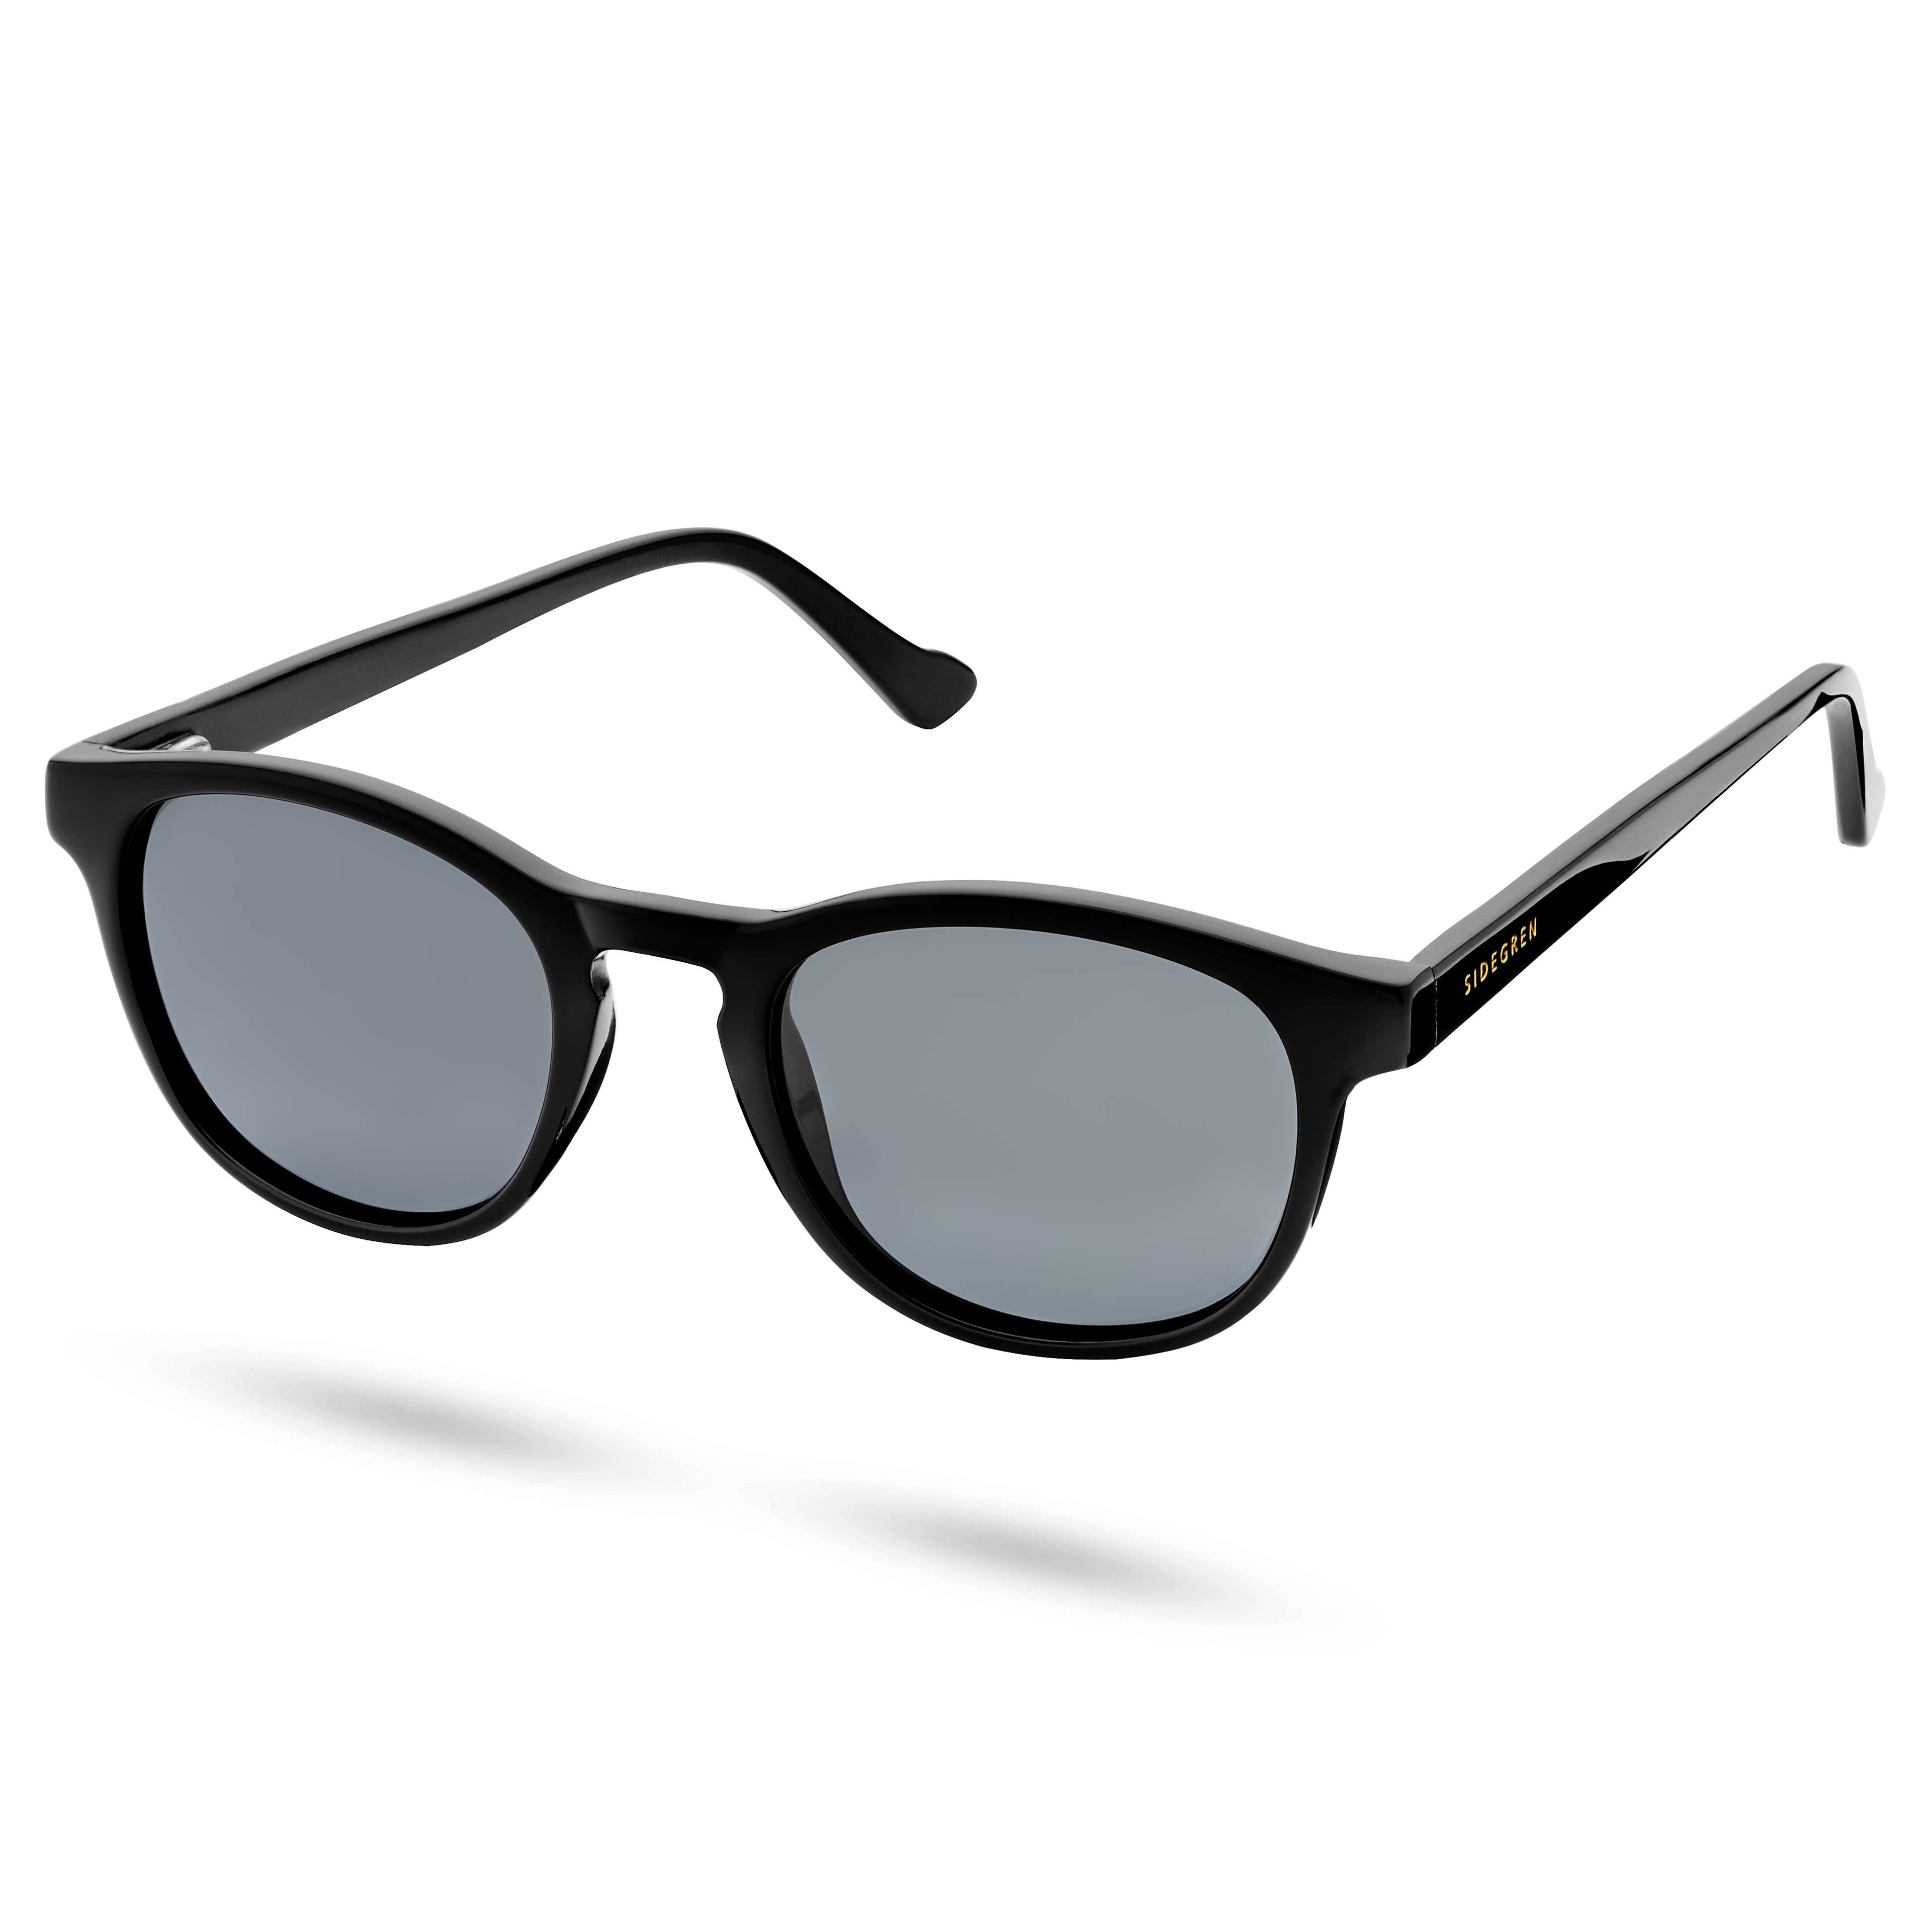  Klassische schwarze polarisierte Smokey-Sonnenbrille